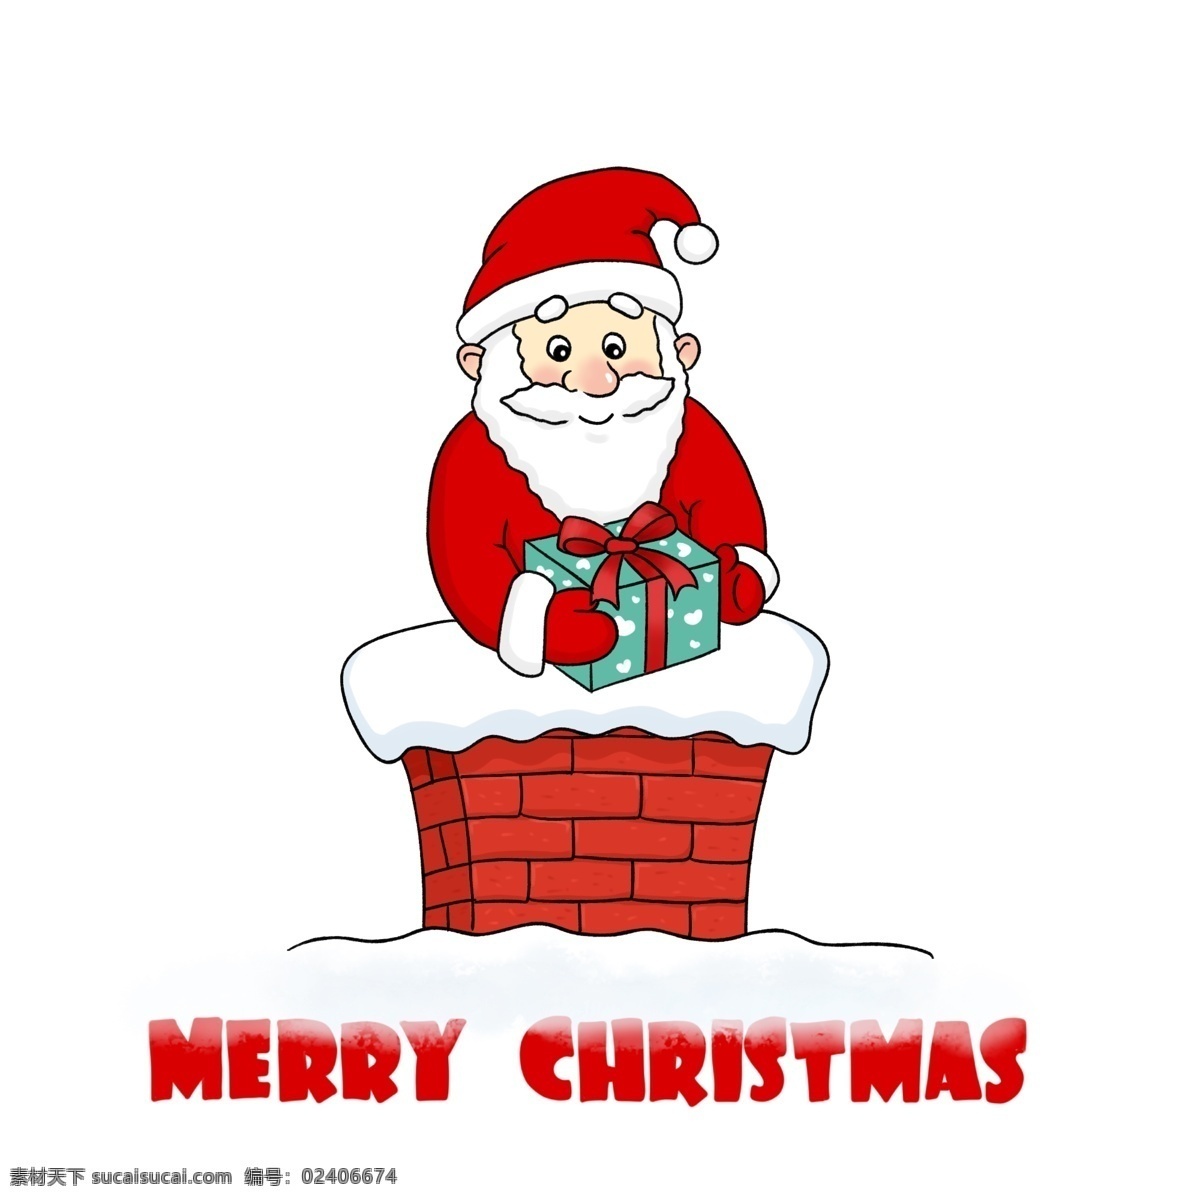 圣诞节 手绘 卡通 烟囱 上 圣诞老人 圣诞礼物 christmas 圣诞夜 圣诞 礼物包裹 merry santa